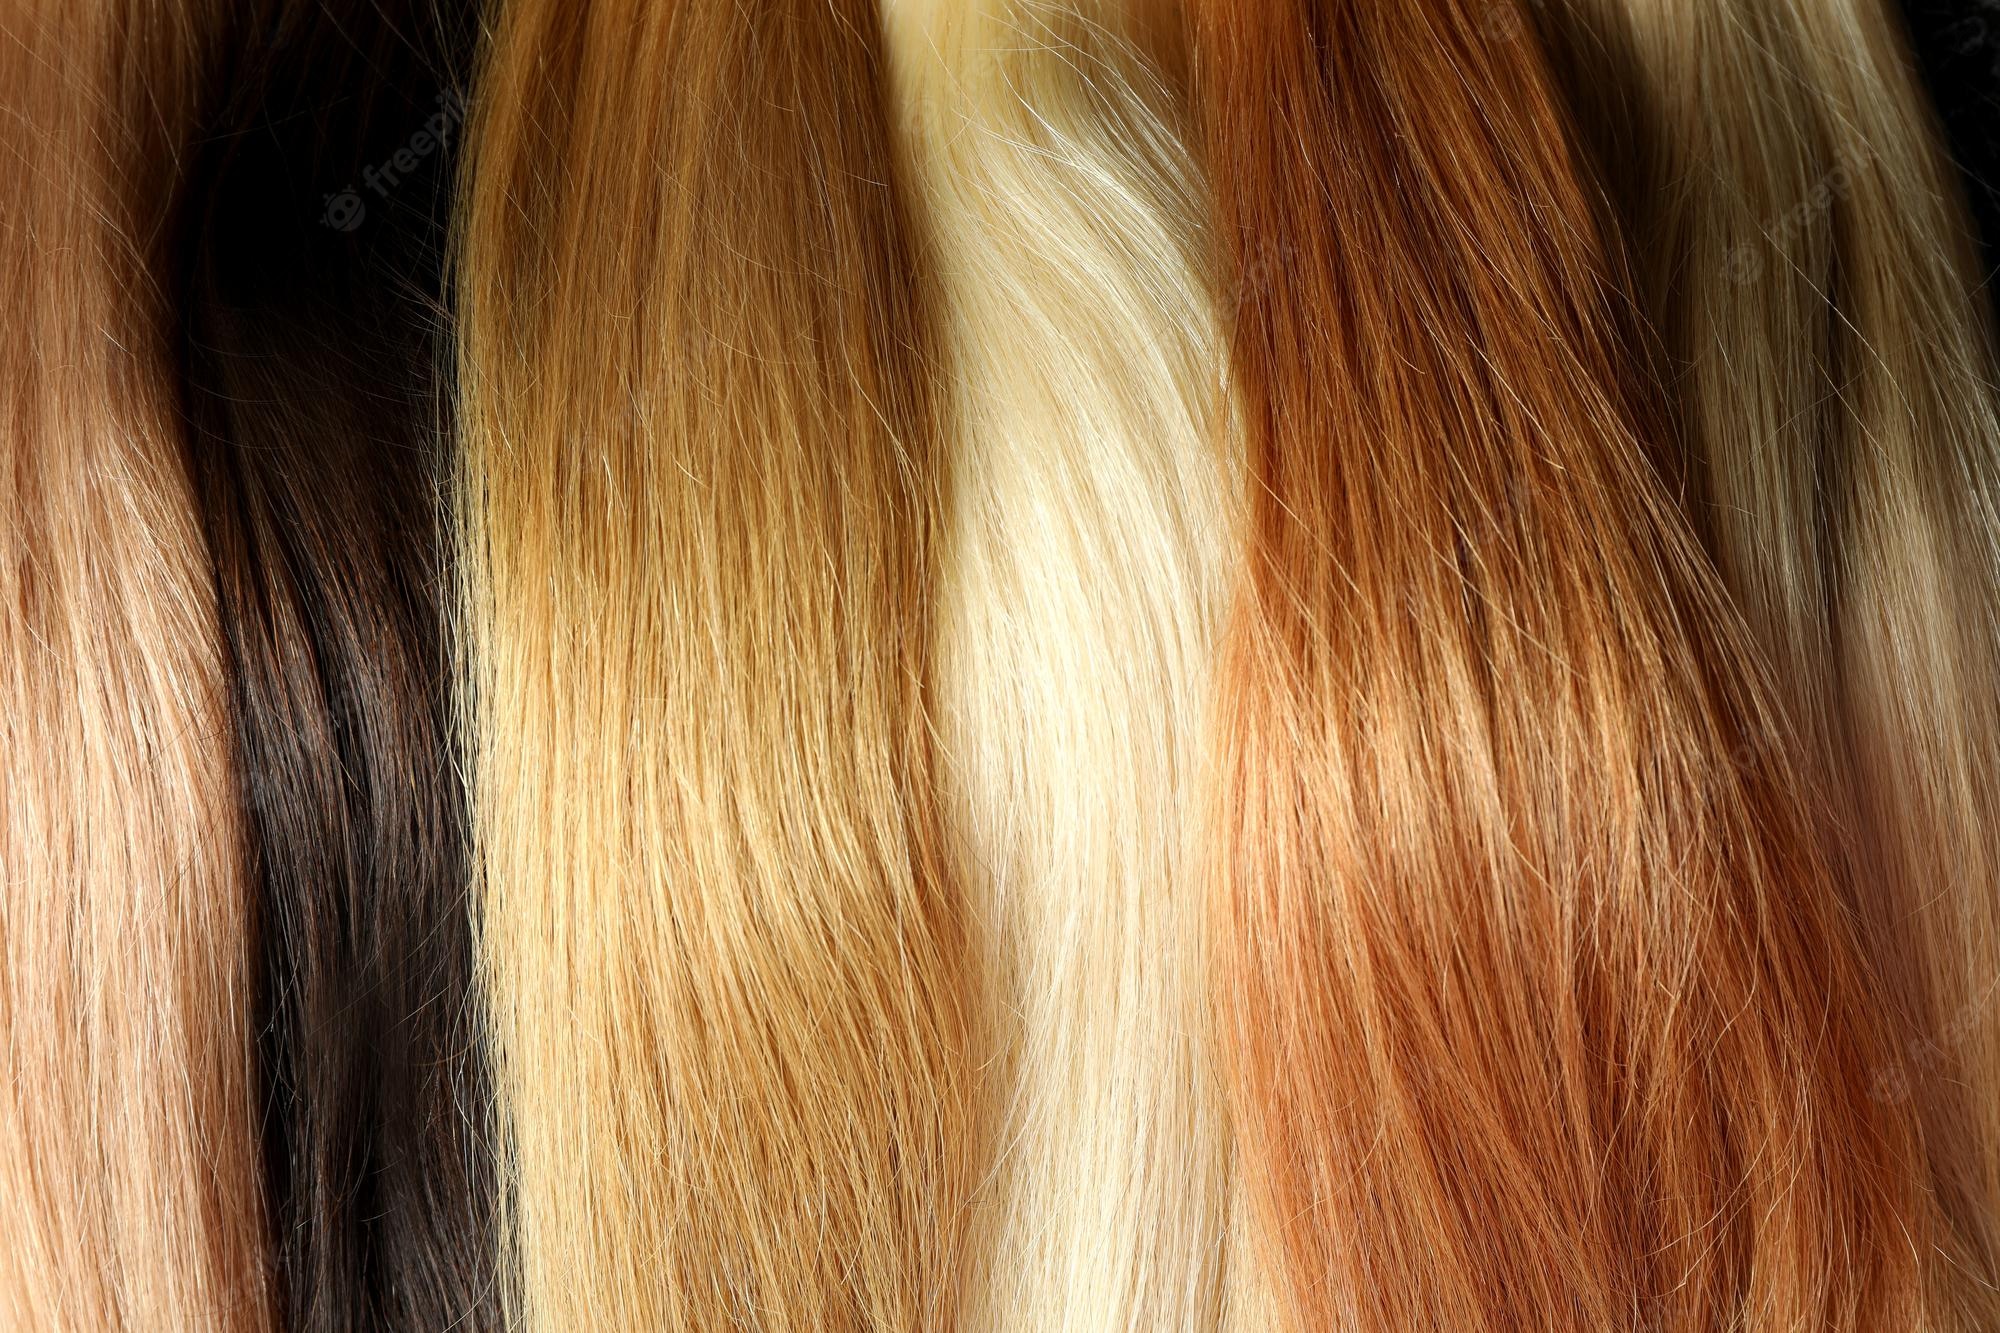 Hair Colour Facts